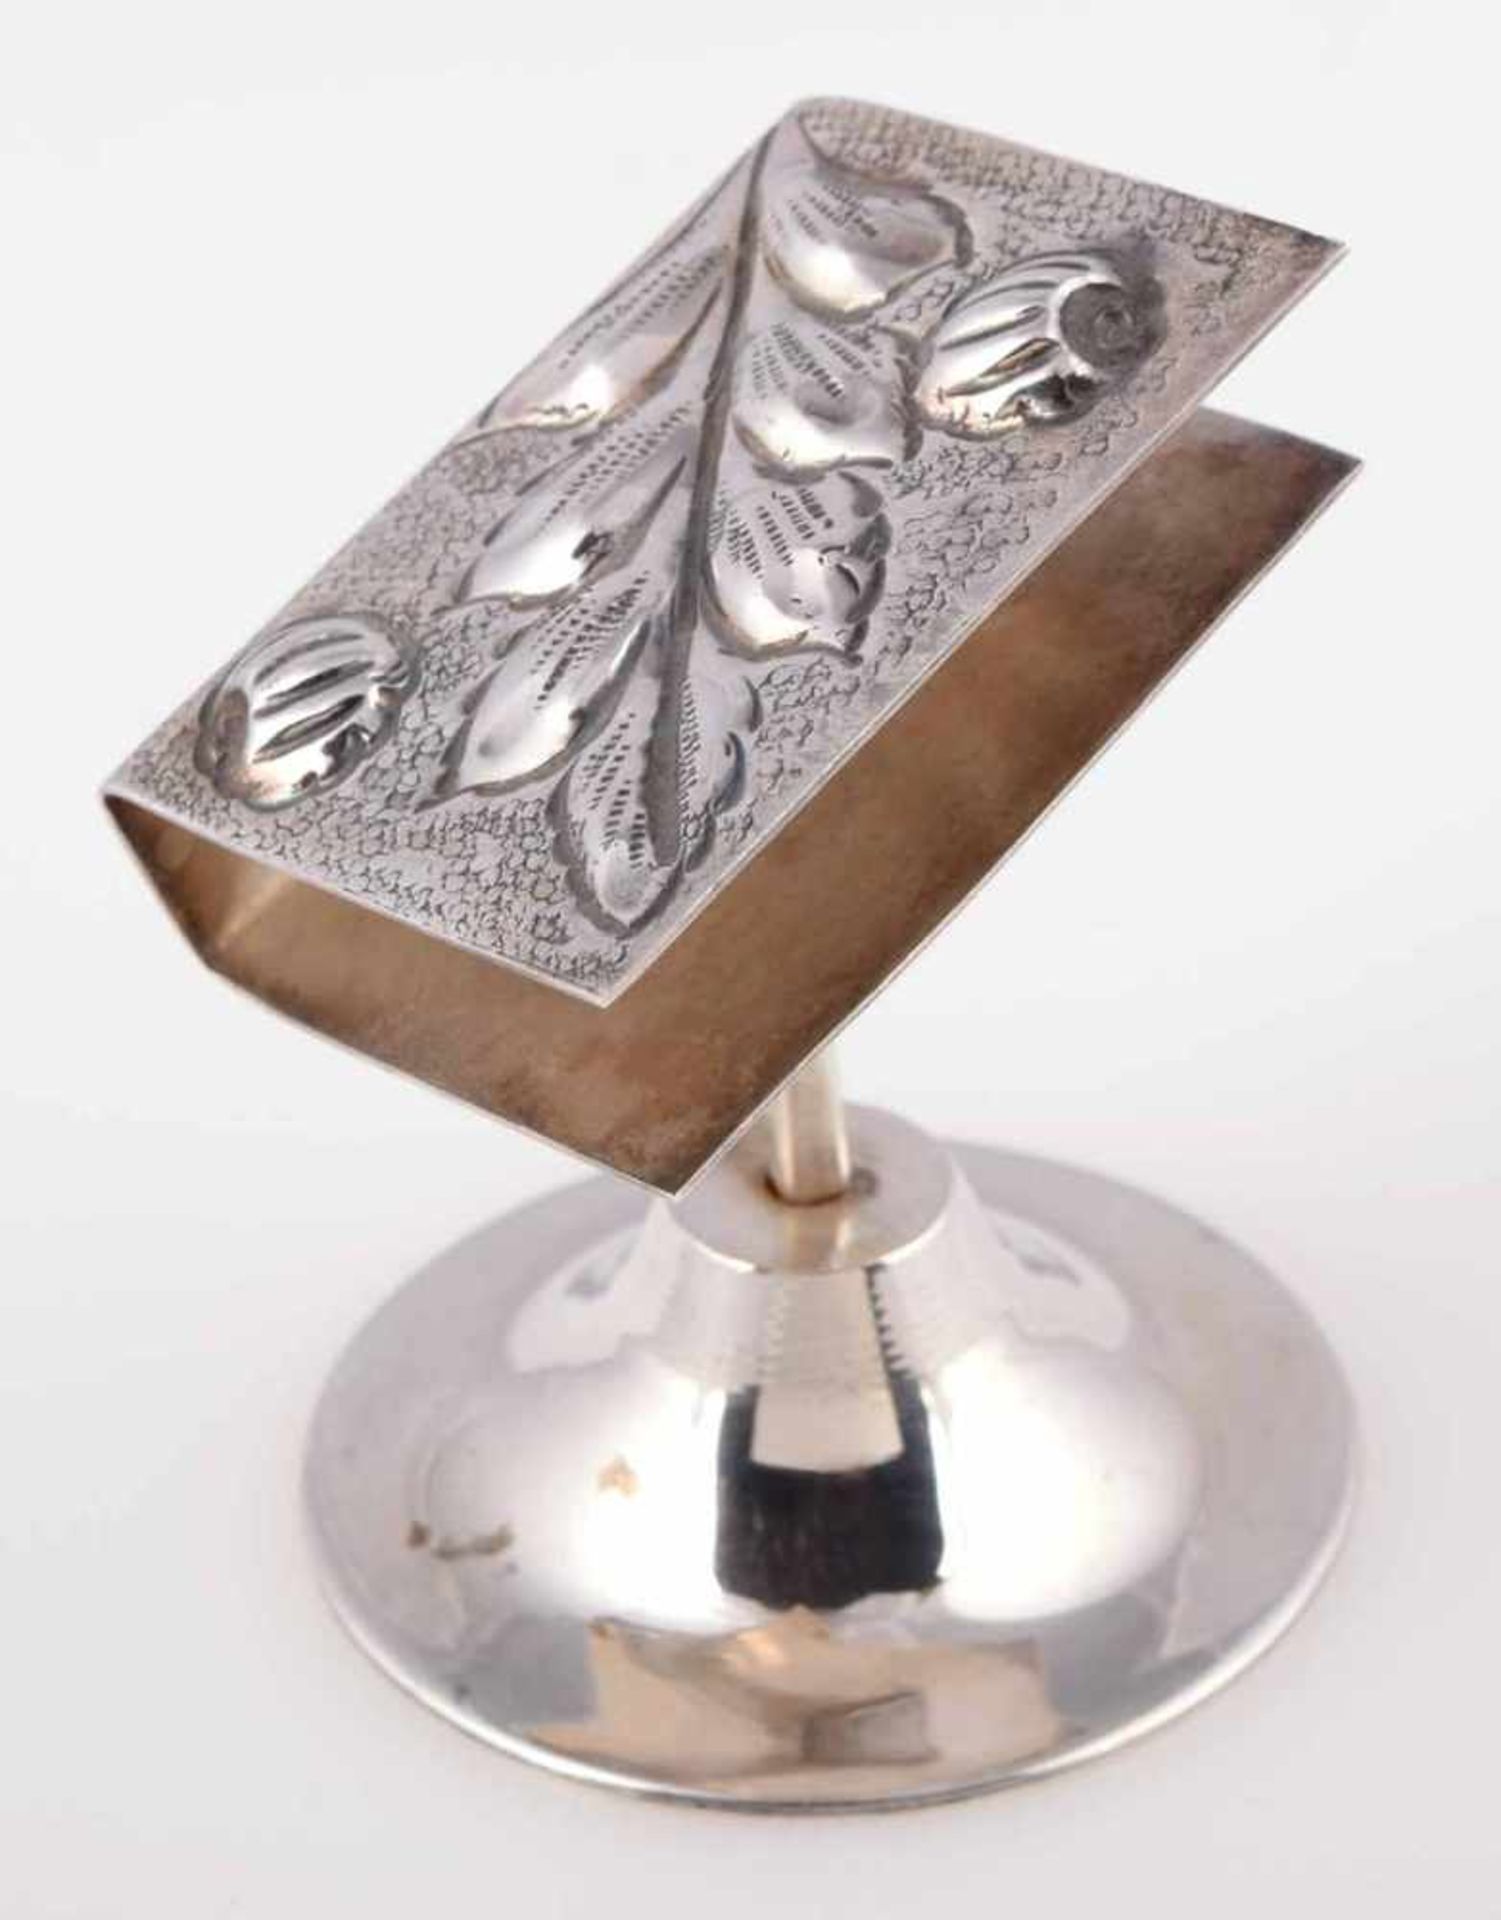 Ständer für Streichholzschachtel Silber 900, gemarkt "Kivircik", buchförmige Halterung mit - Image 2 of 3